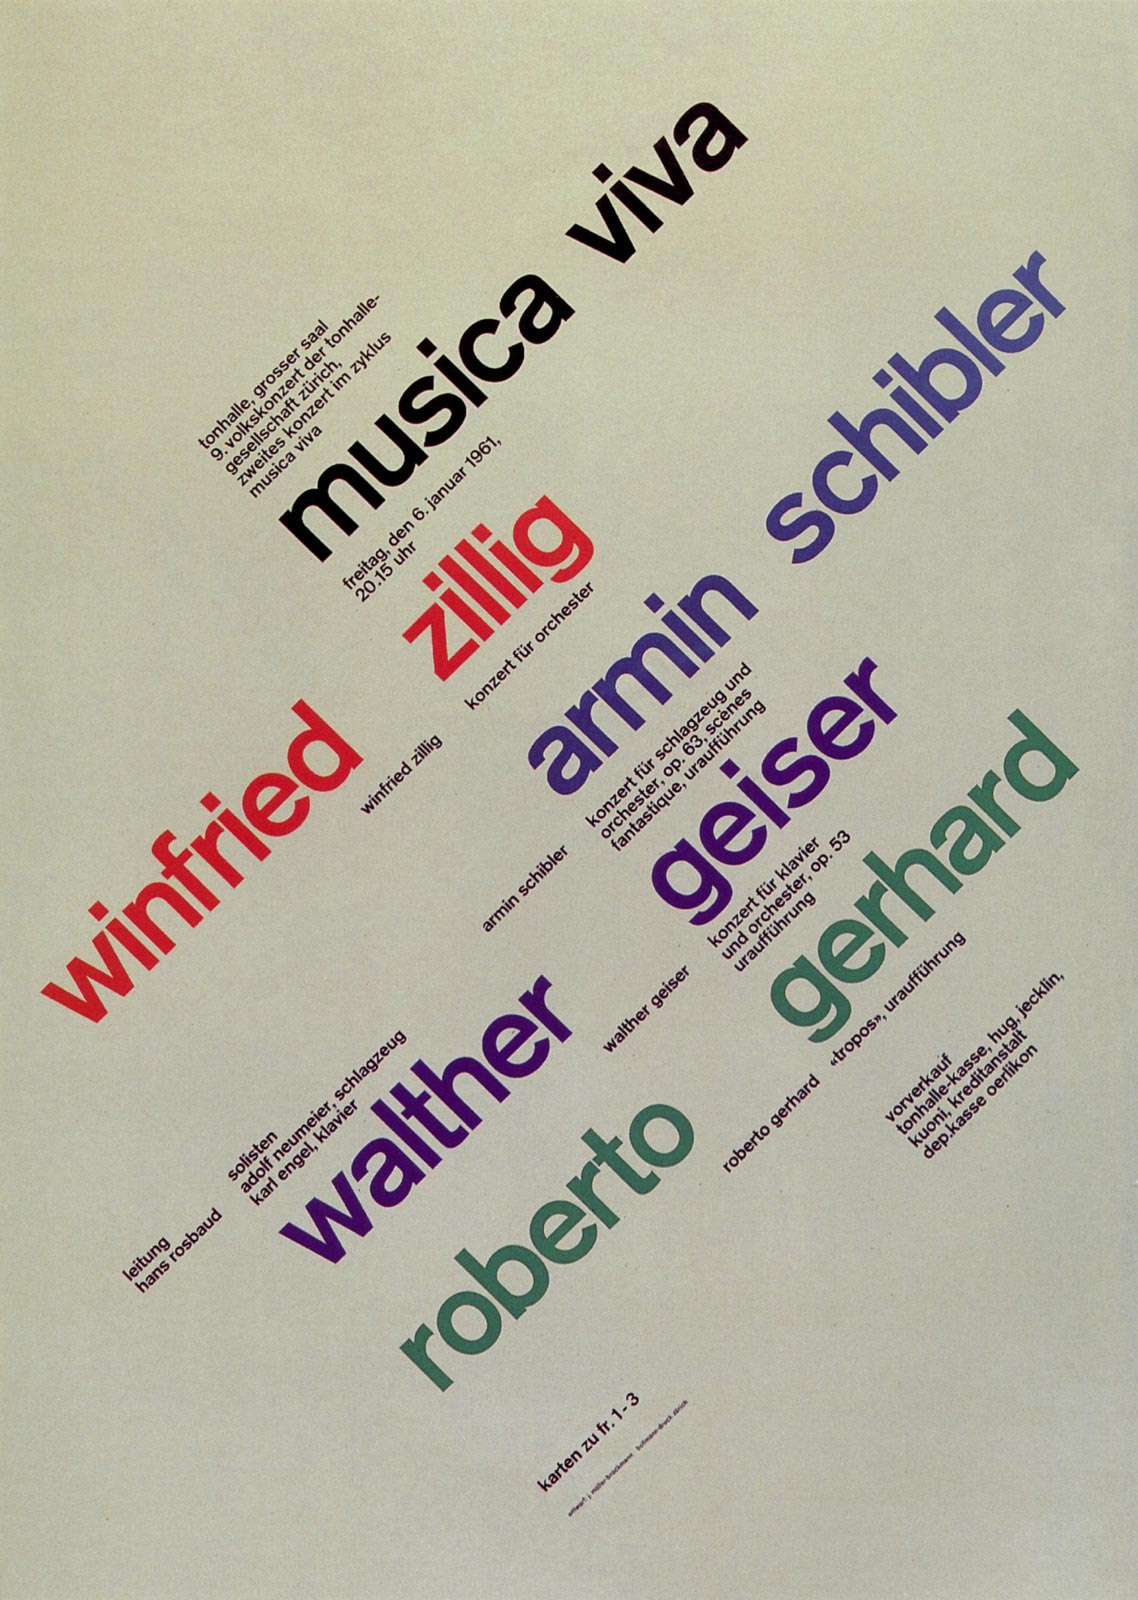 8. Zurich Tonhalle. musica viva. Concert poster, 1961